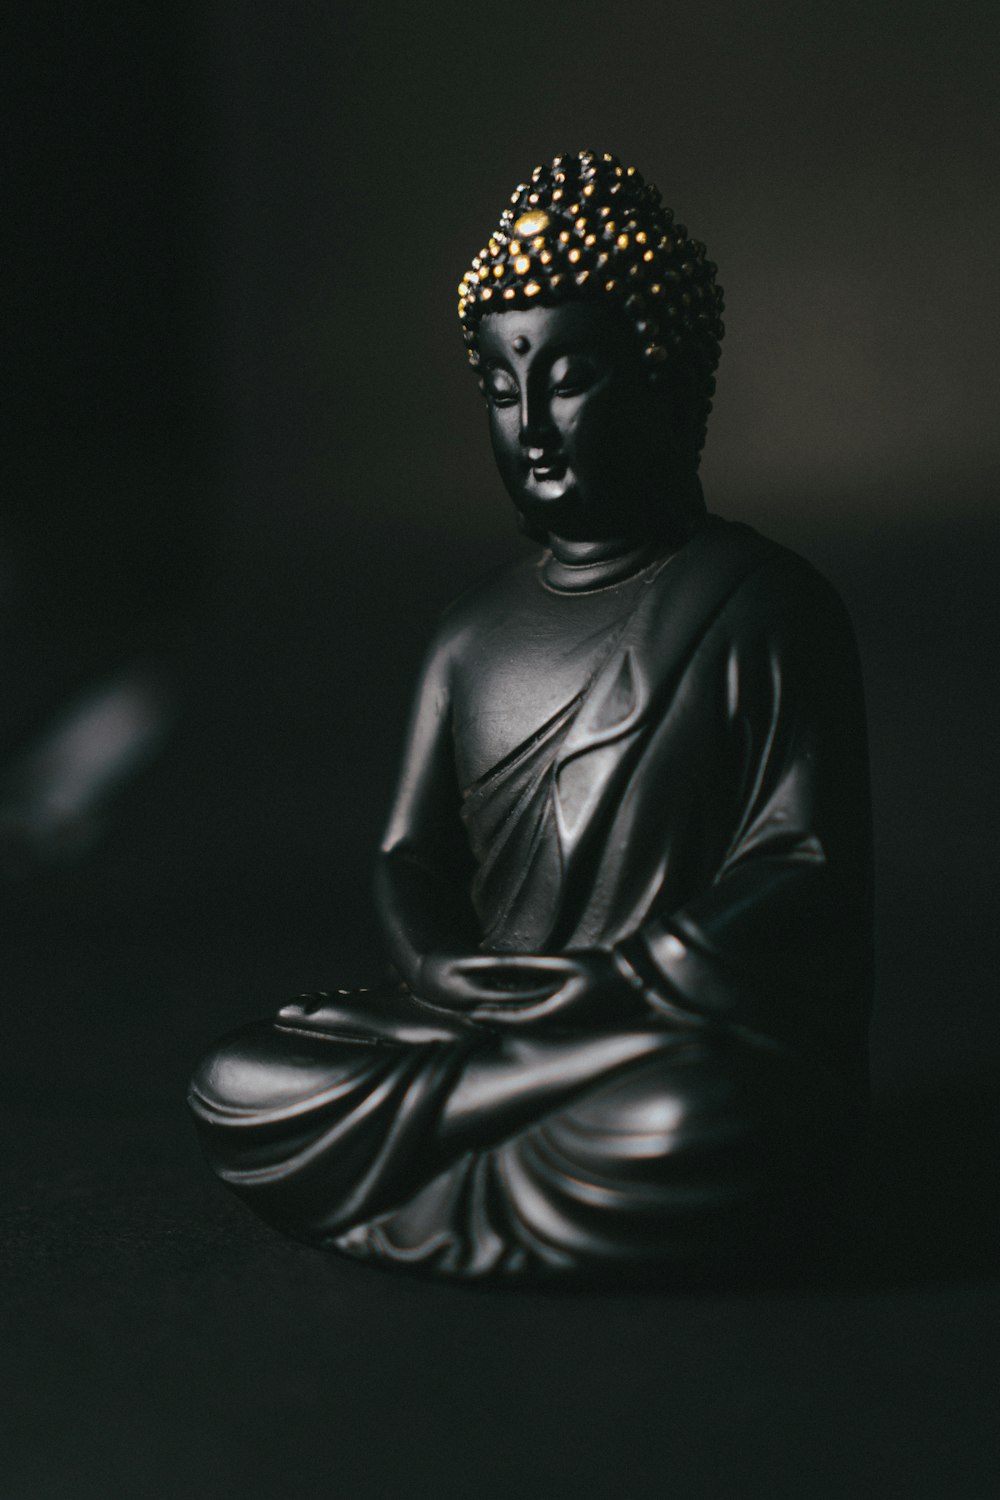 Schwarze Gautama Buddha Statue auf schwarzer Oberfläche